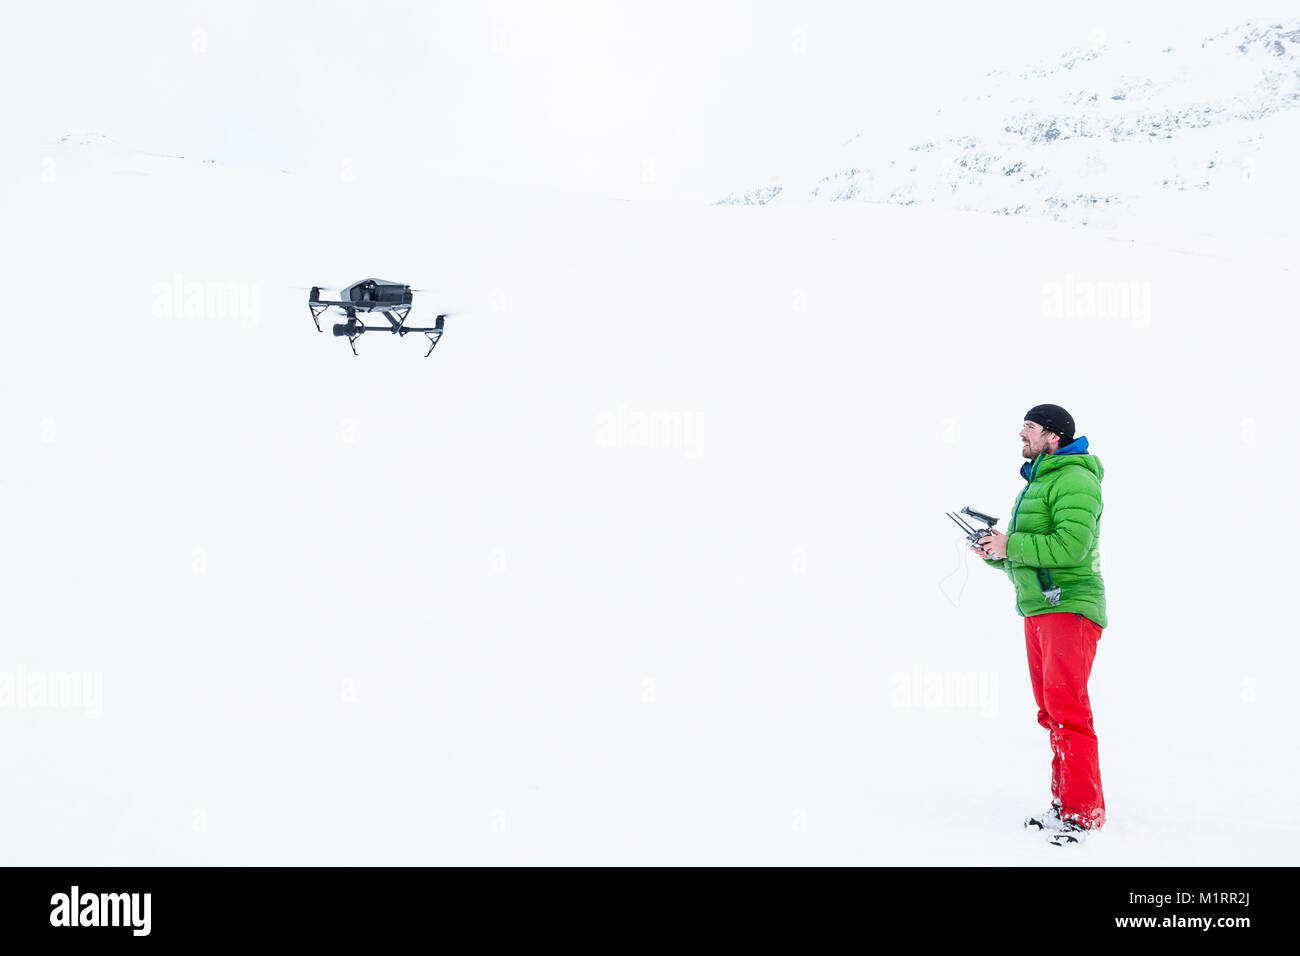 Skibotn, Norway. Drone op Eirik Heim flying drone. Stock Photo